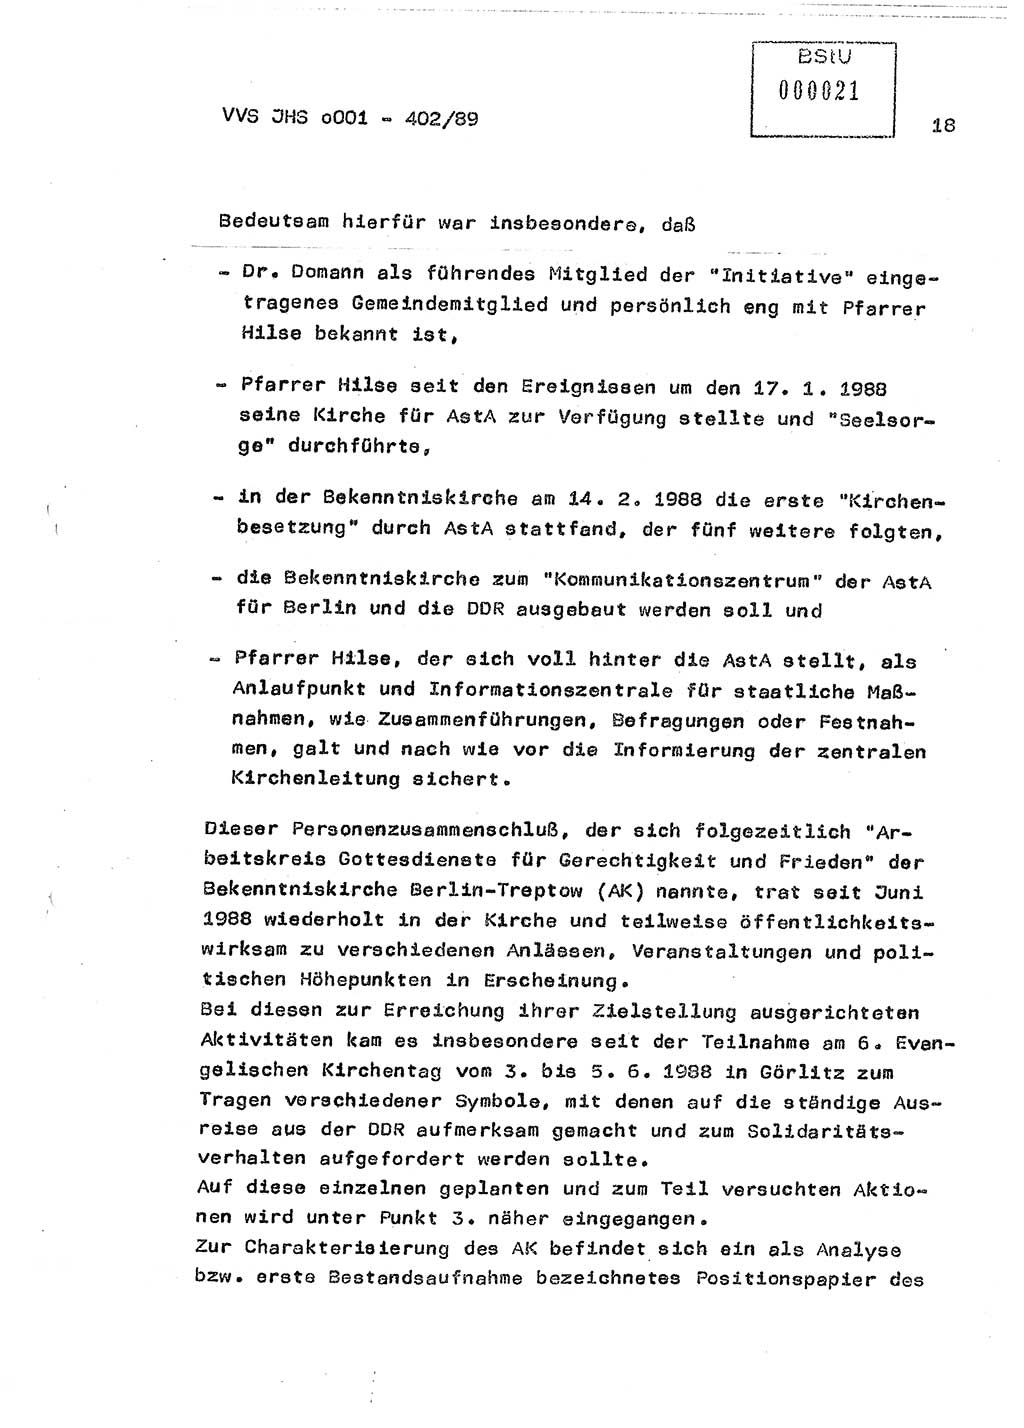 Diplomarbeit Major Günter Müller (HA Ⅸ/9), Ministerium für Staatssicherheit (MfS) [Deutsche Demokratische Republik (DDR)], Juristische Hochschule (JHS), Vertrauliche Verschlußsache (VVS) o001-402/89, Potsdam 1989, Seite 18 (Dipl.-Arb. MfS DDR JHS VVS o001-402/89 1989, S. 18)